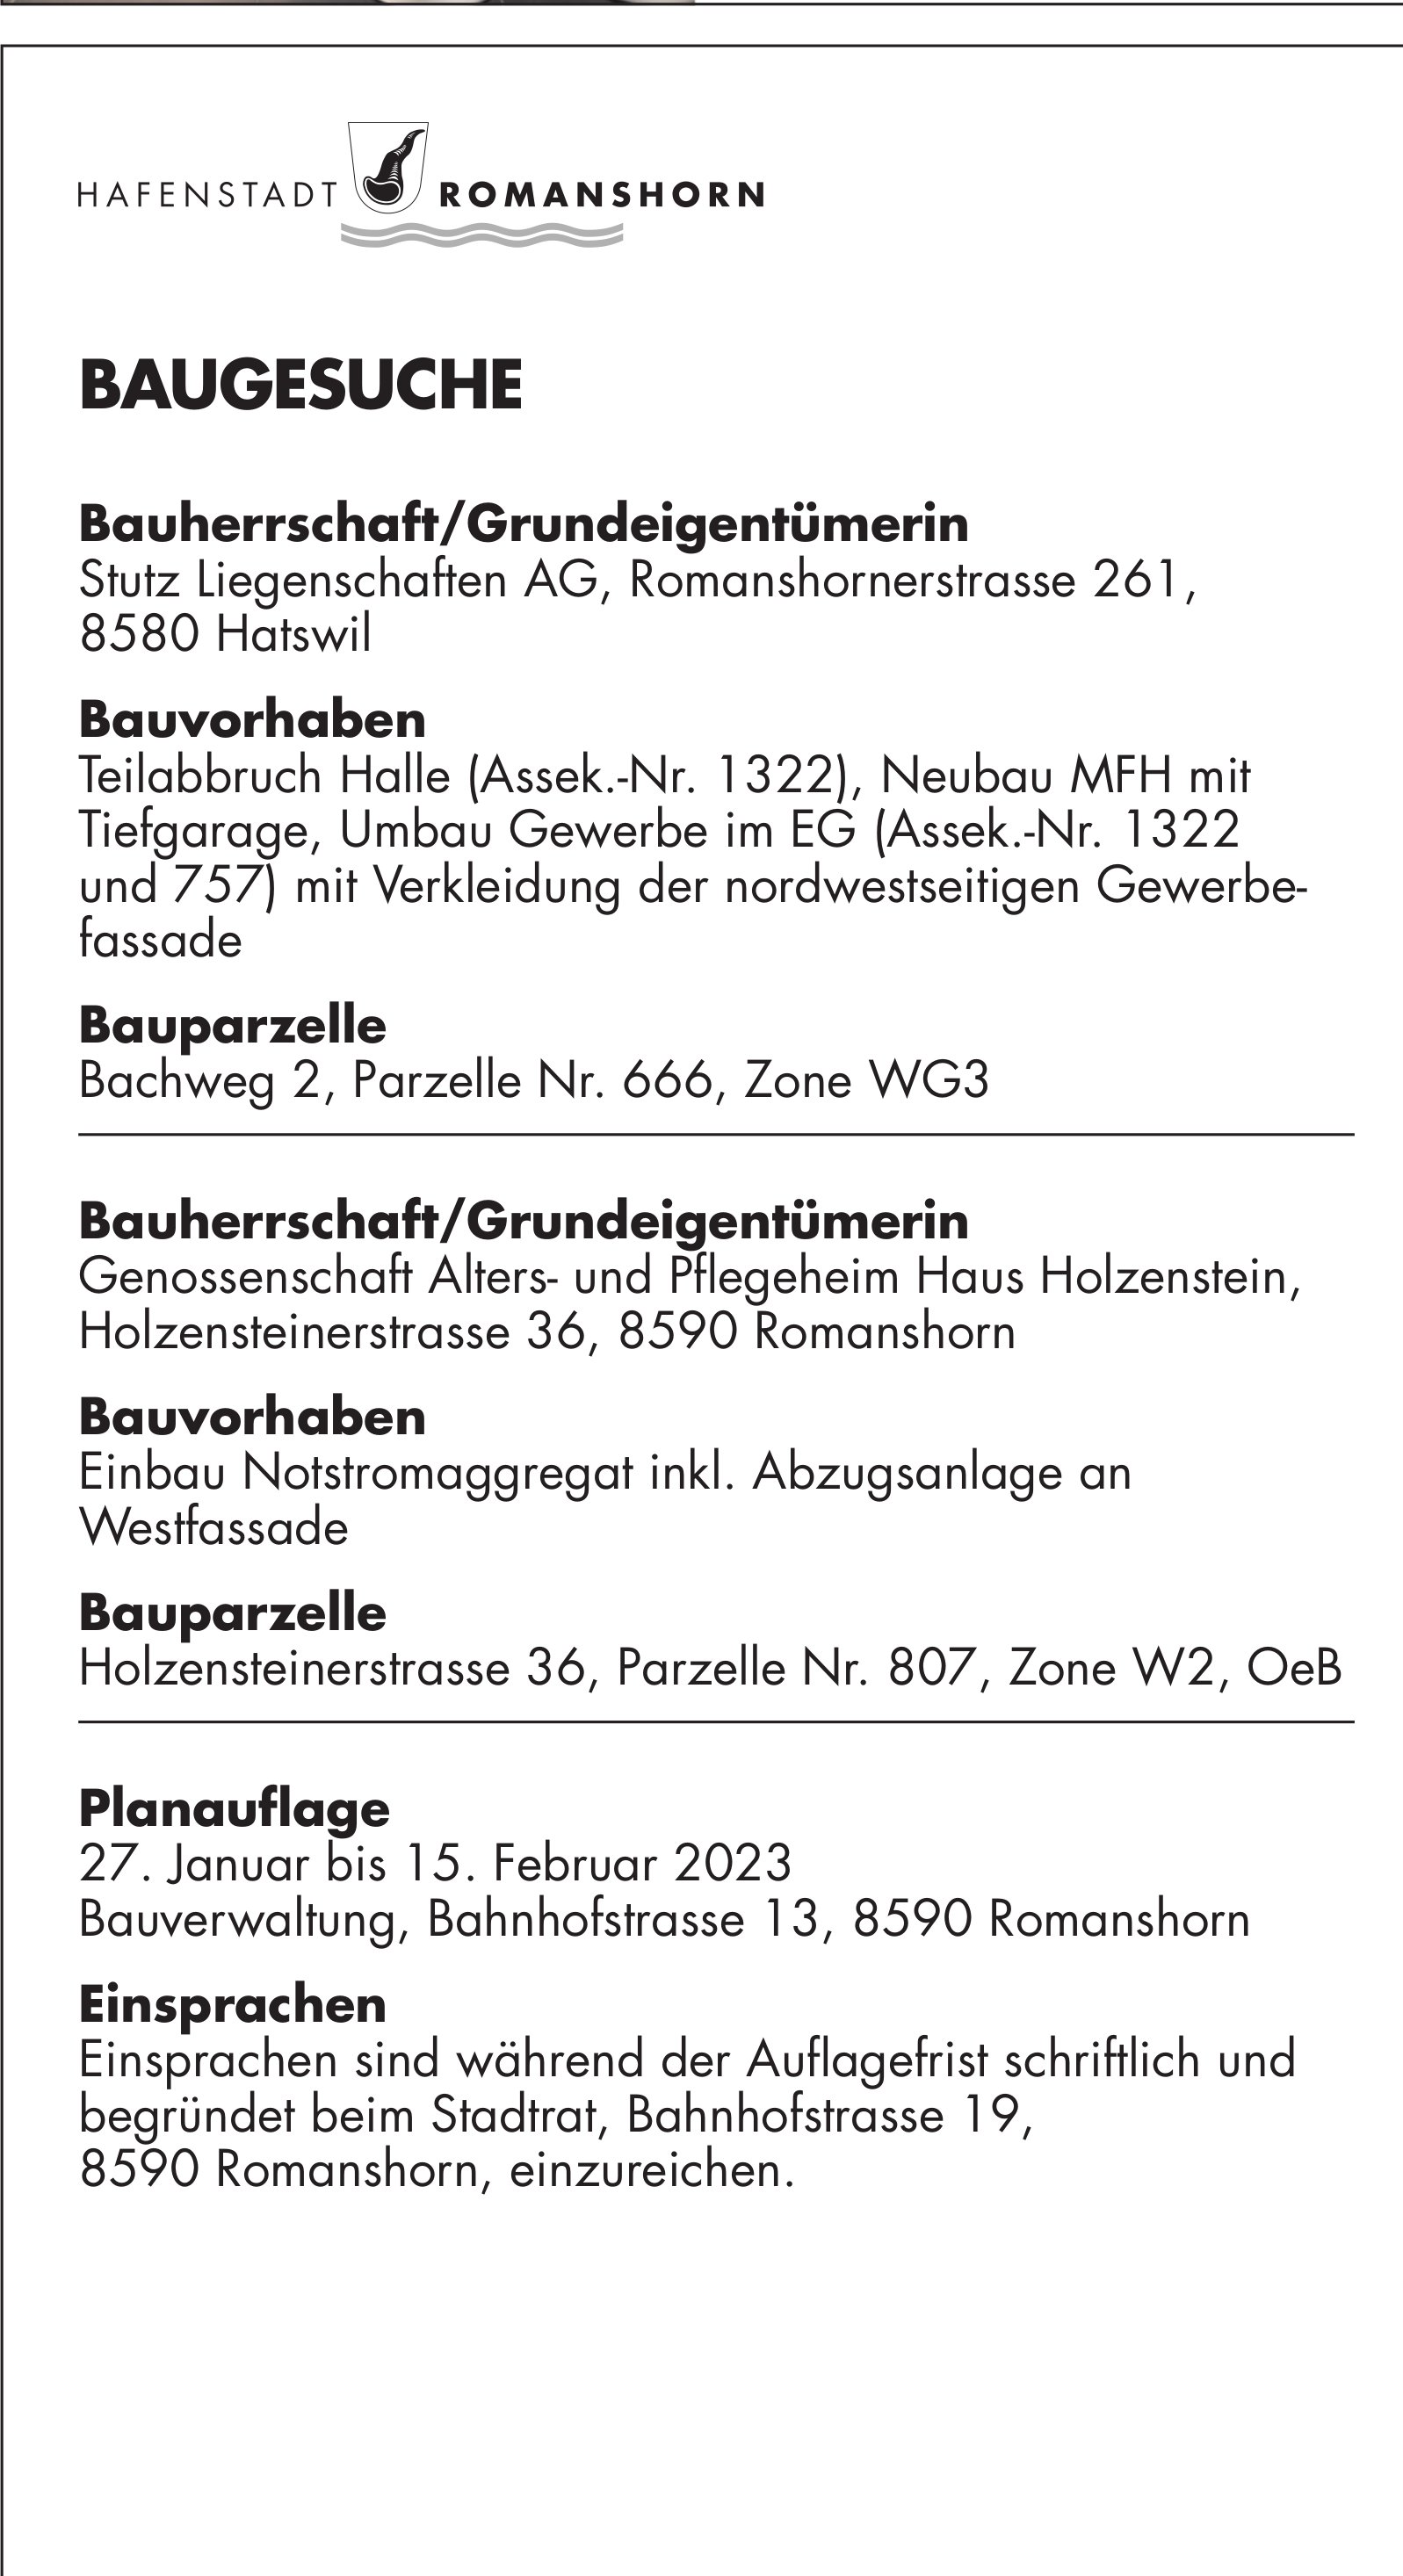 Baugesuche vom 27. Januar 2023, Hafenstadt Romanshorn